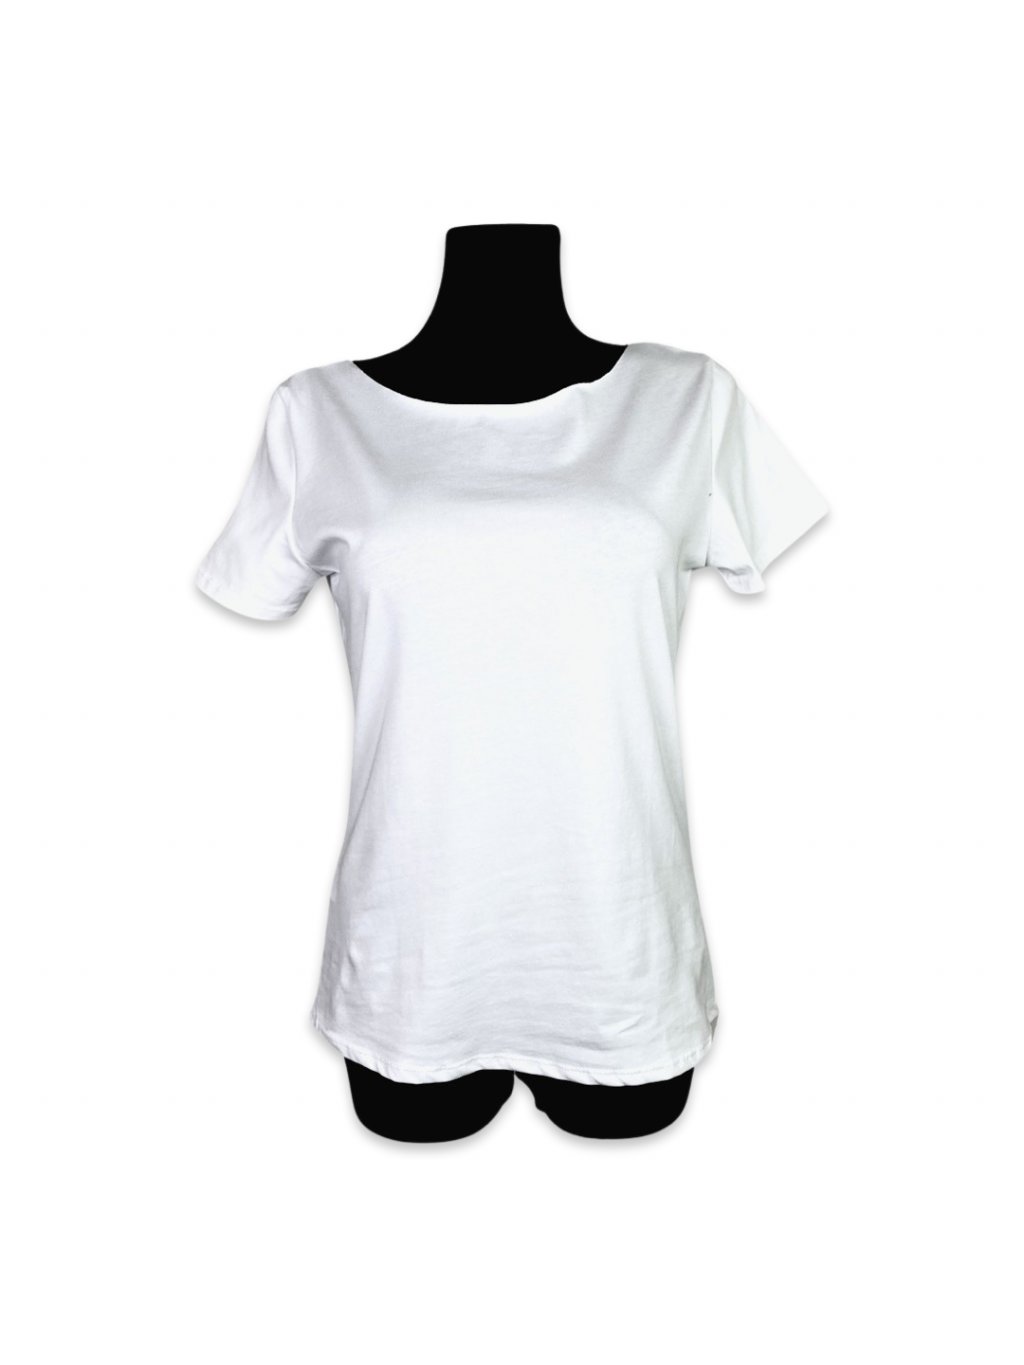 Basic tričko s krátkým rukávem - bílé